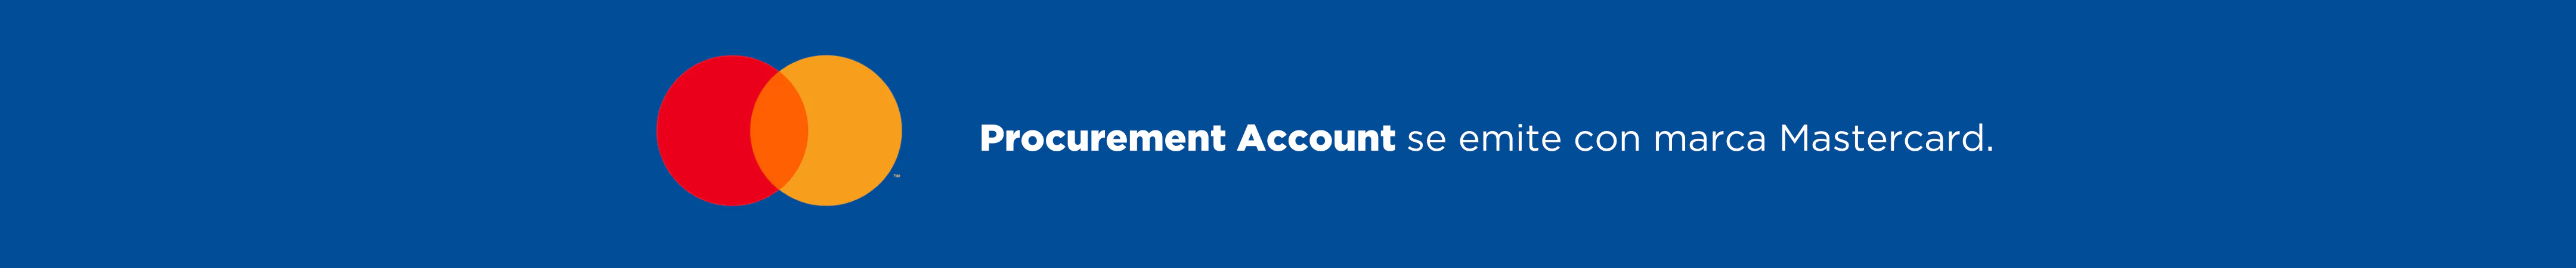 Procurement Account se emite con marca Mastercard